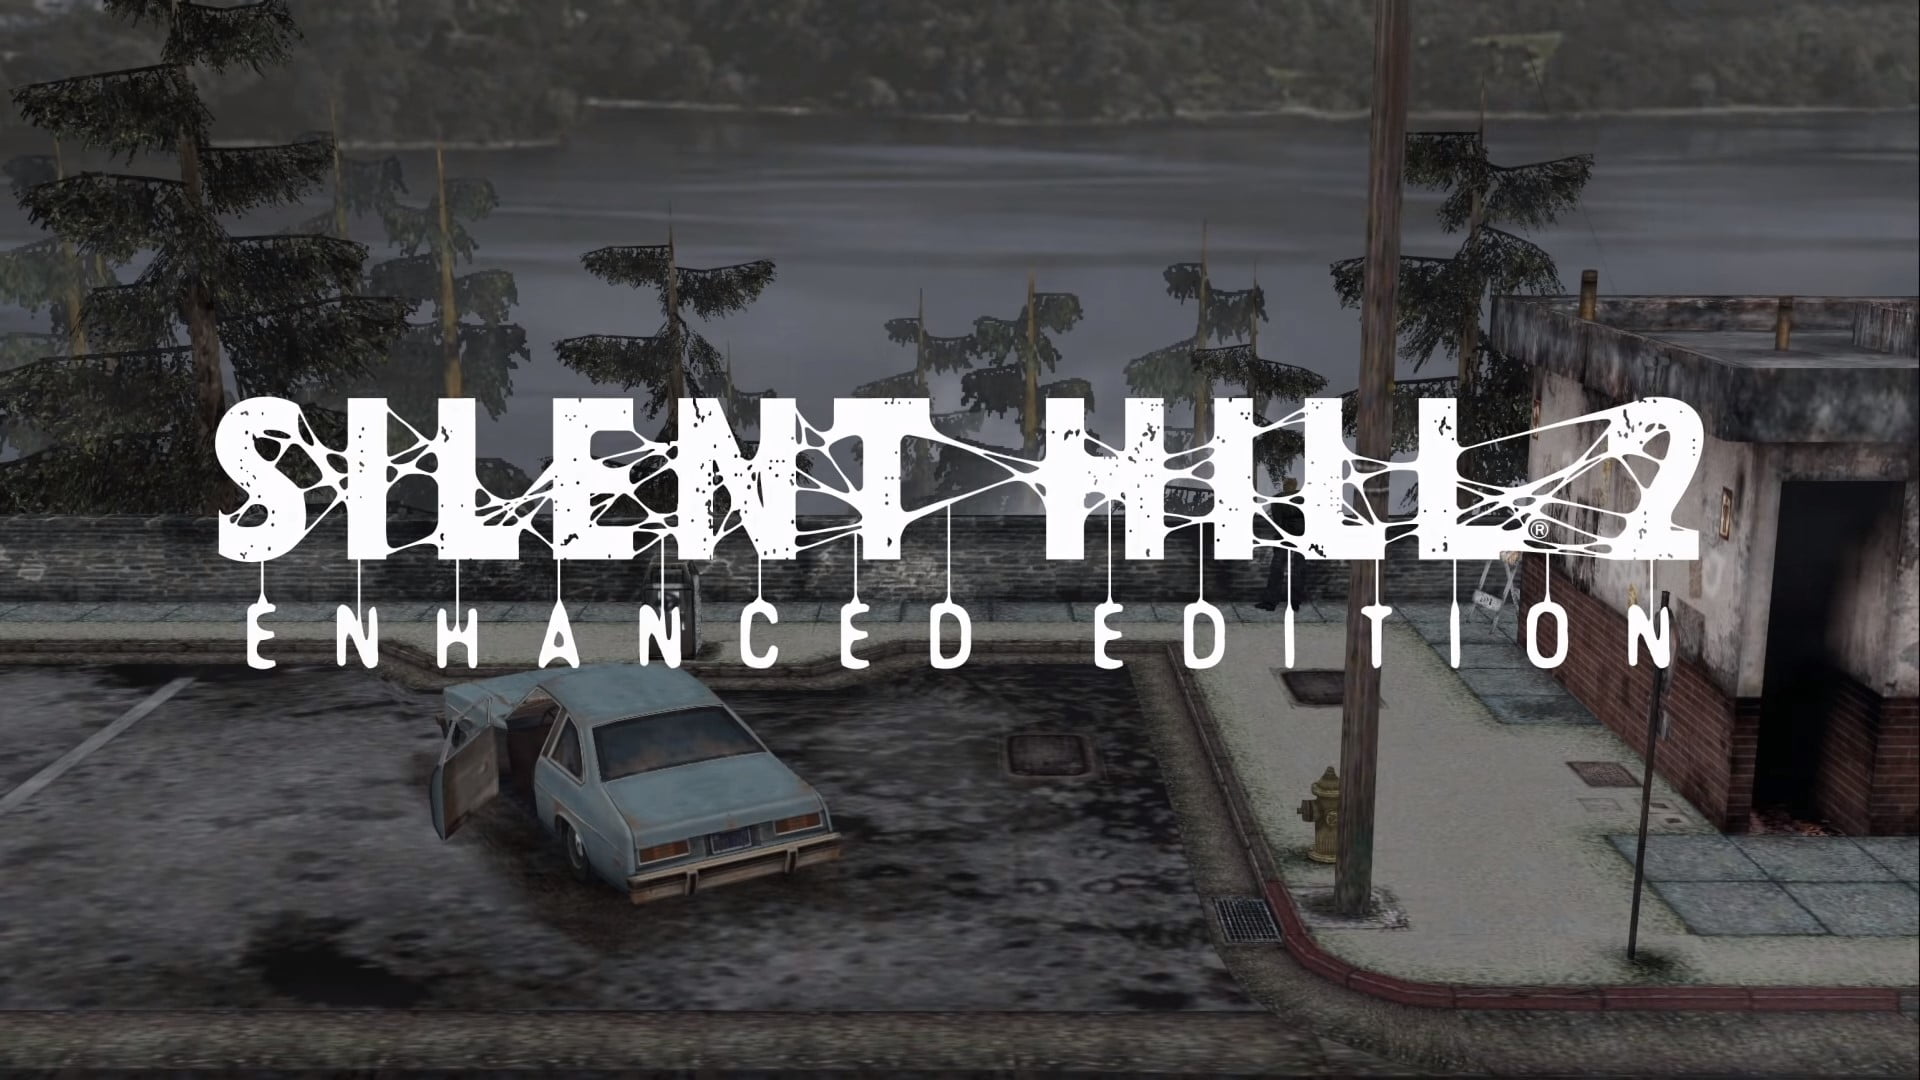 Silent Hill 2 Enhanced Edition en PC deja ver su progresos